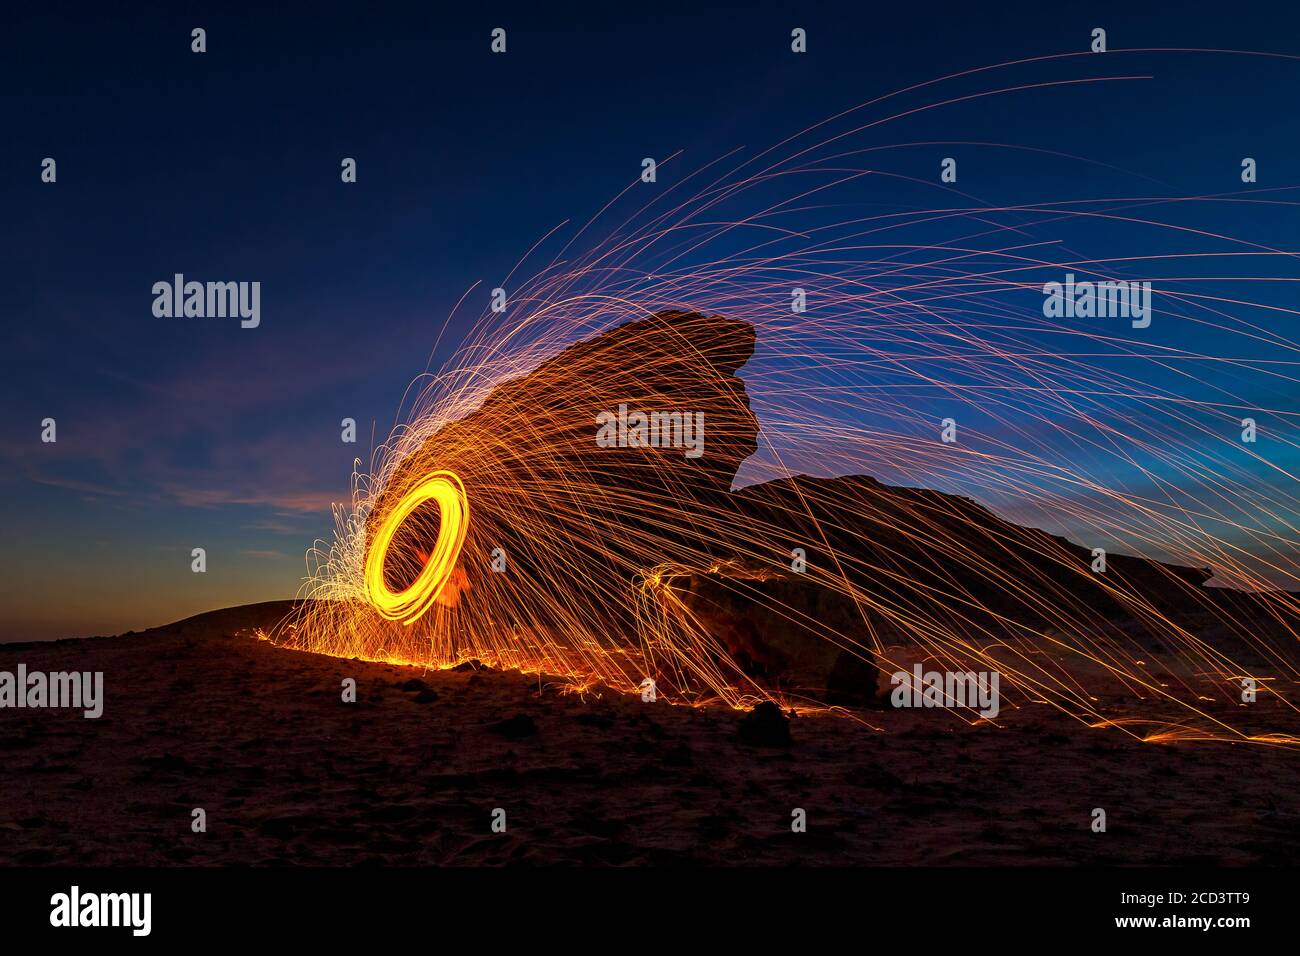 Una lana d'acciaio al fuoco di notte (fotografia notturna con una bassa velocità dell'otturatore) - selettiva messa a fuoco sul soggetto. Foto Stock